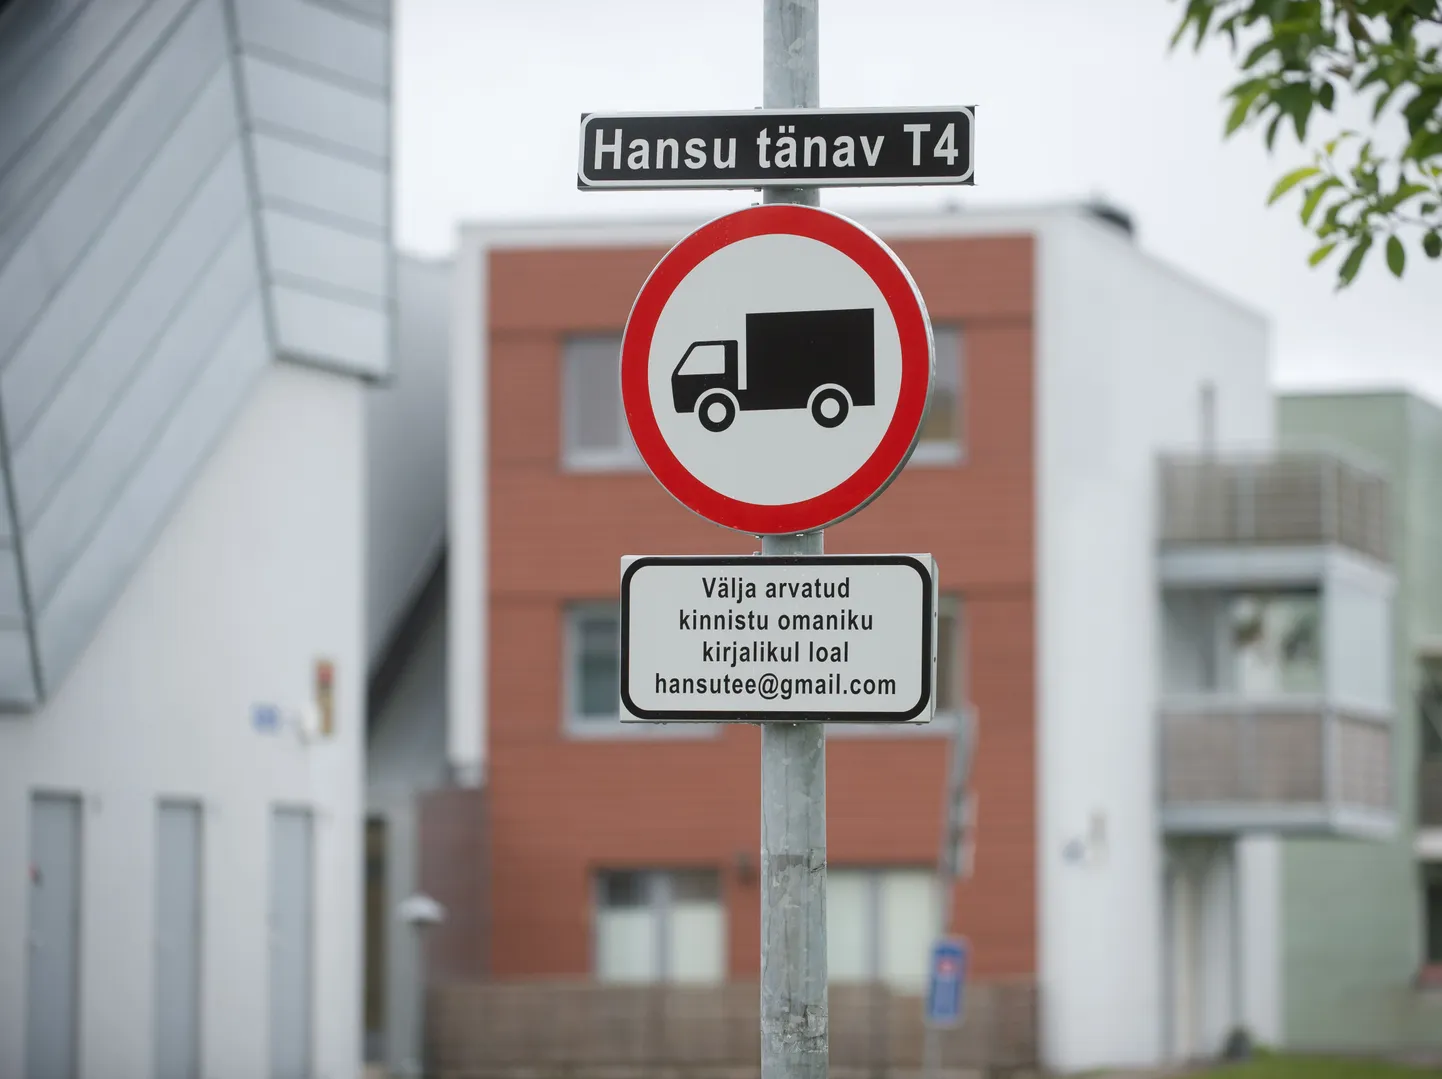 Oksjonilt Hansu tee ostnud ettevõte on tänaval korraldanud tasulise parkimise.